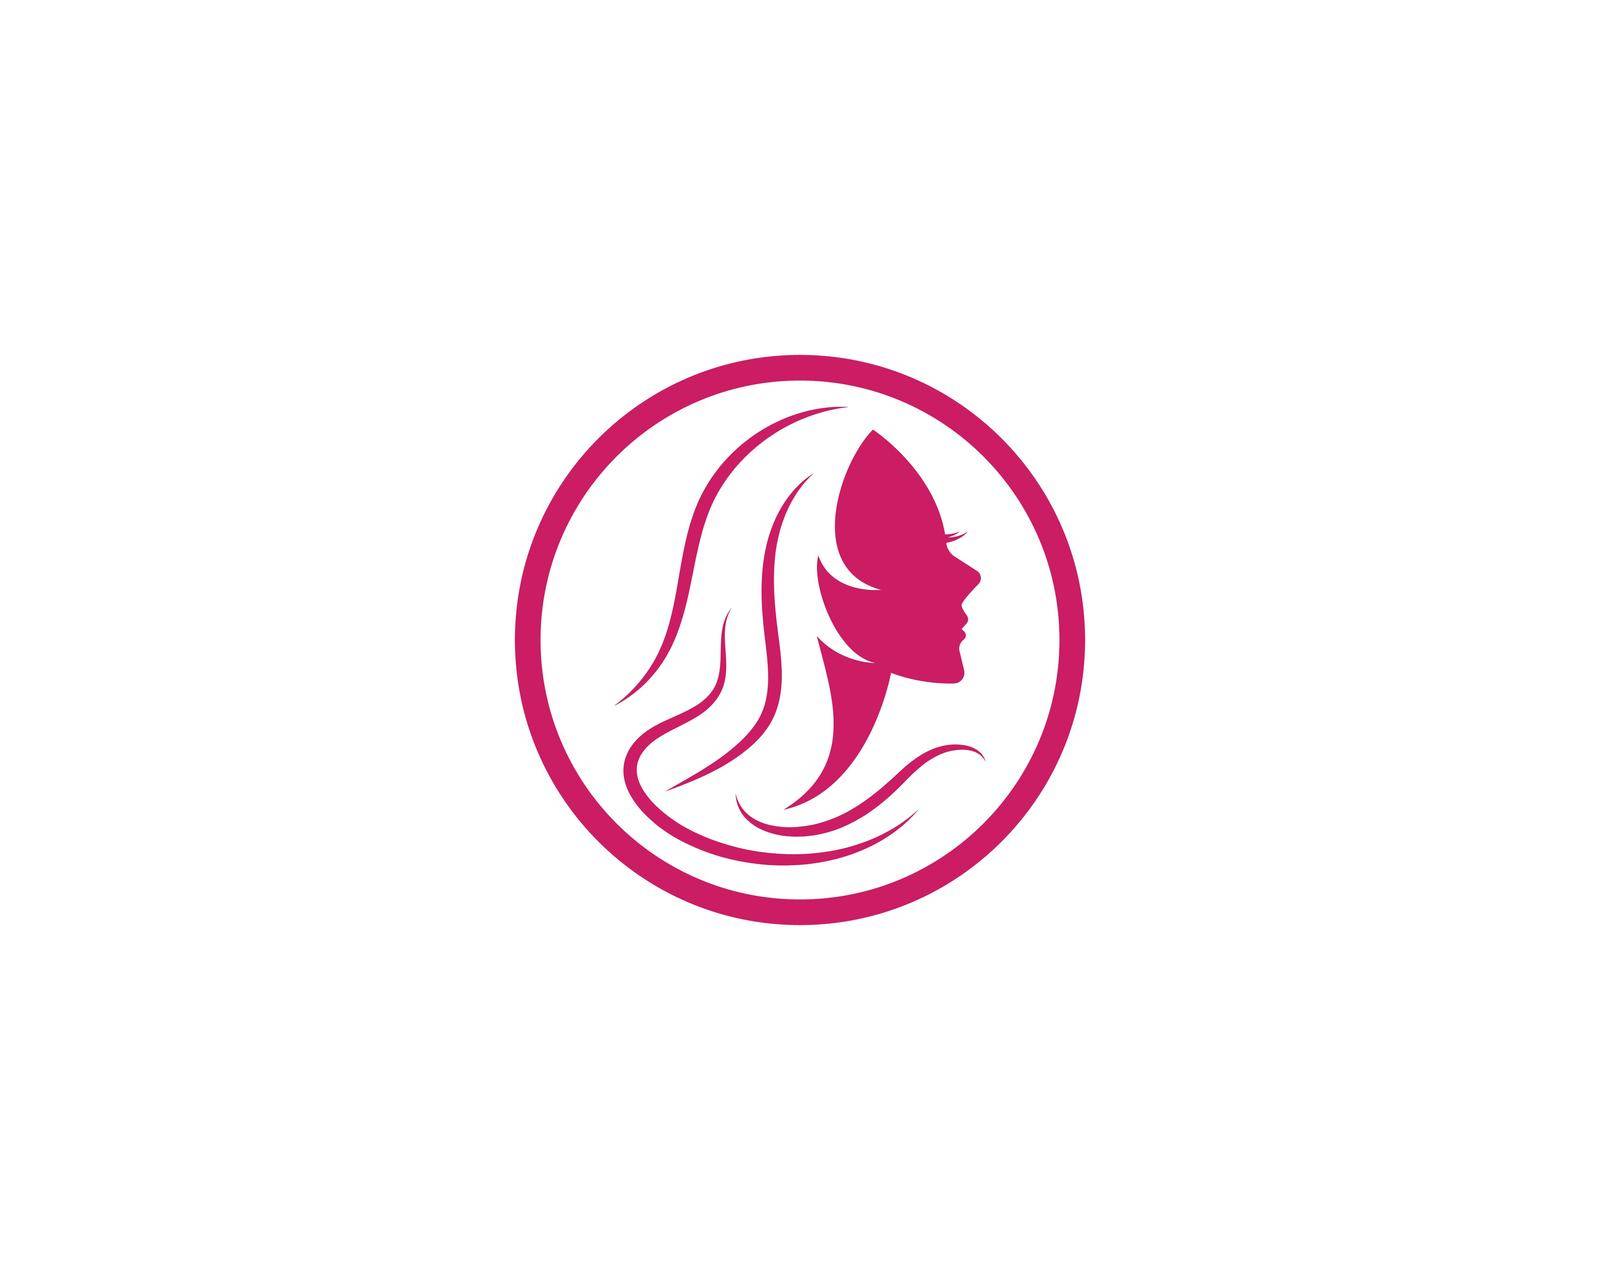 Beauty Women face silhouette by awk